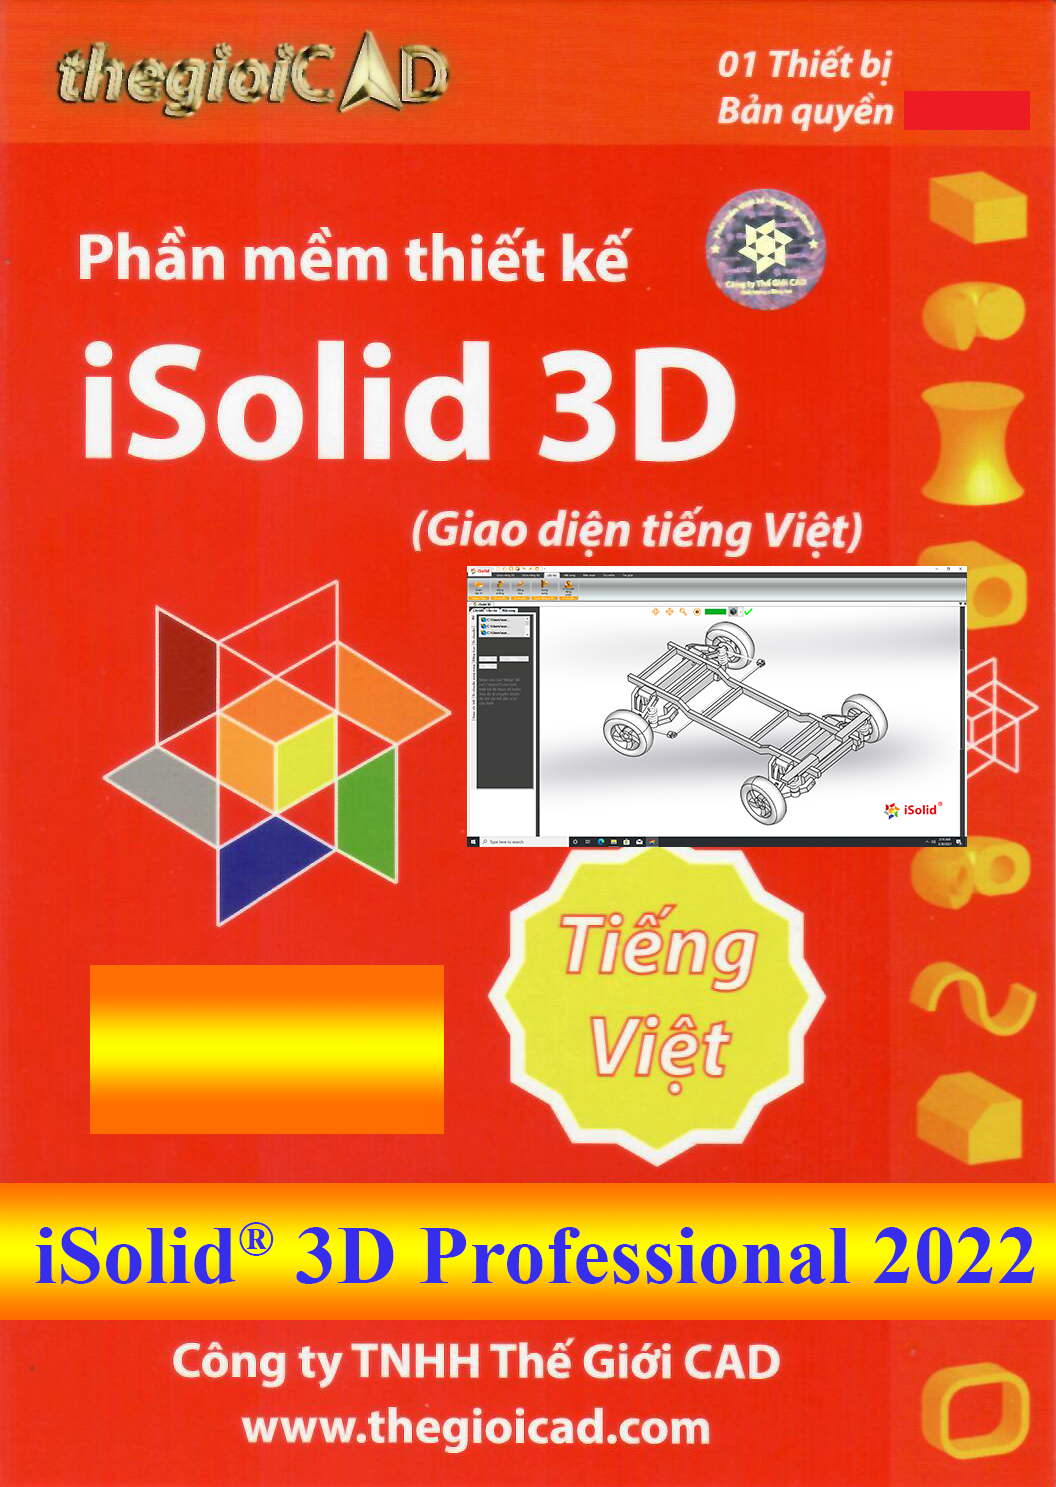 CAD WORLD: phần mềm CAD: Nếu bạn là dân thiết kế nội thất hoặc kiến trúc sư thì CAD WORLD chính là giải pháp tuyệt vời cho bạn. Với các tính năng thanh đổi hình dạng, xử lý 2D và 3D, phần mềm CAD World sẽ giúp bạn thực hiện các dự án một cách hiệu quả và tiết kiệm thời gian. Hãy truy cập ngay để khám phá thêm về phần mềm này nhé!